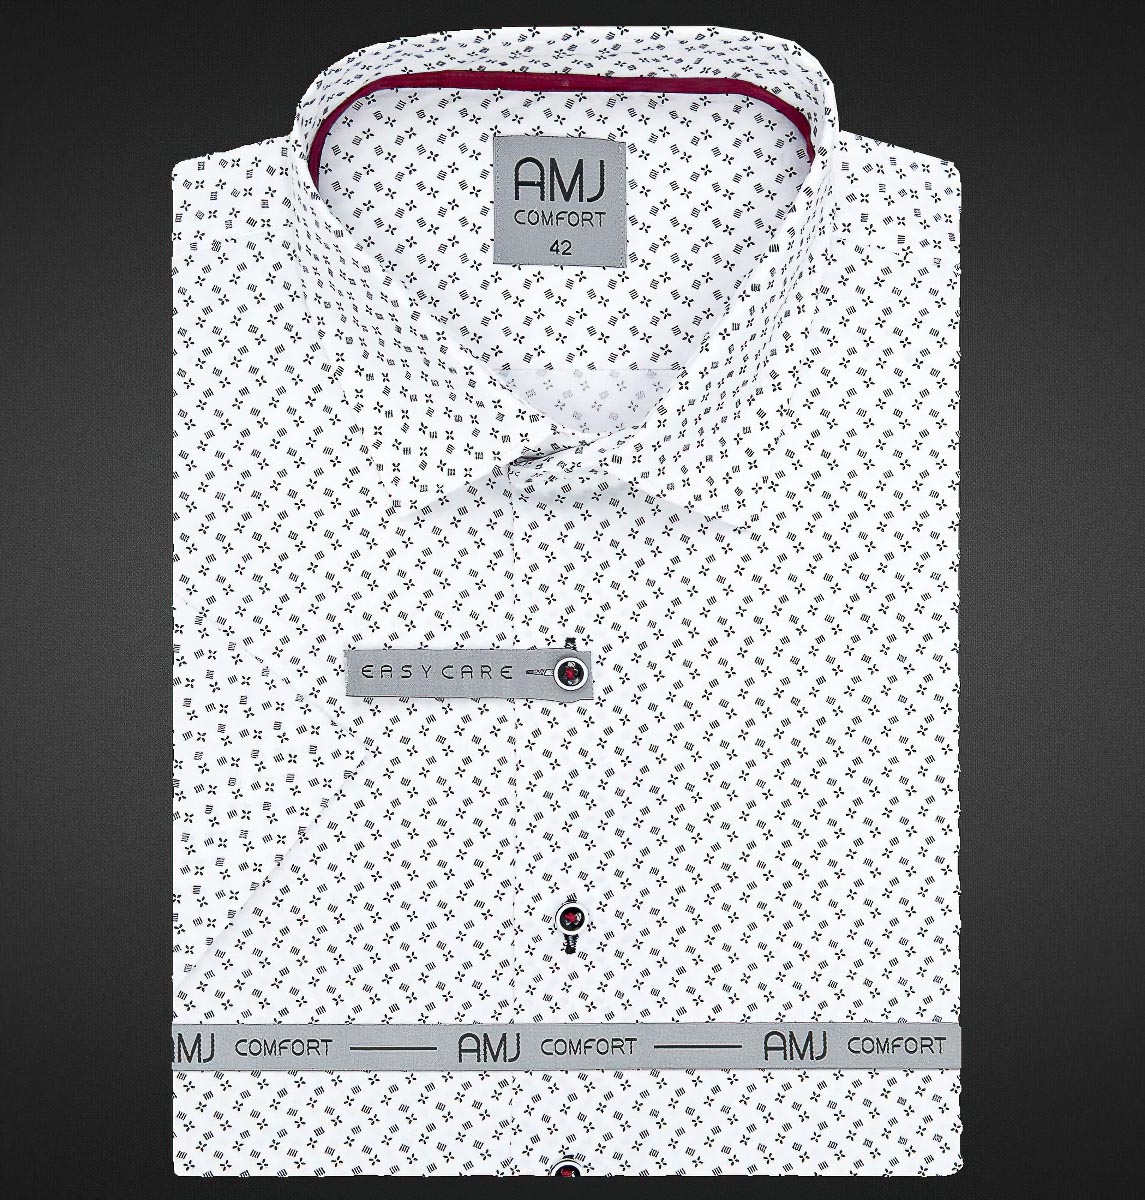 Pánská košile AMJ bavlněná, černé křížky a kostičky na bílé VKBR1135, krátký rukáv, regular fit